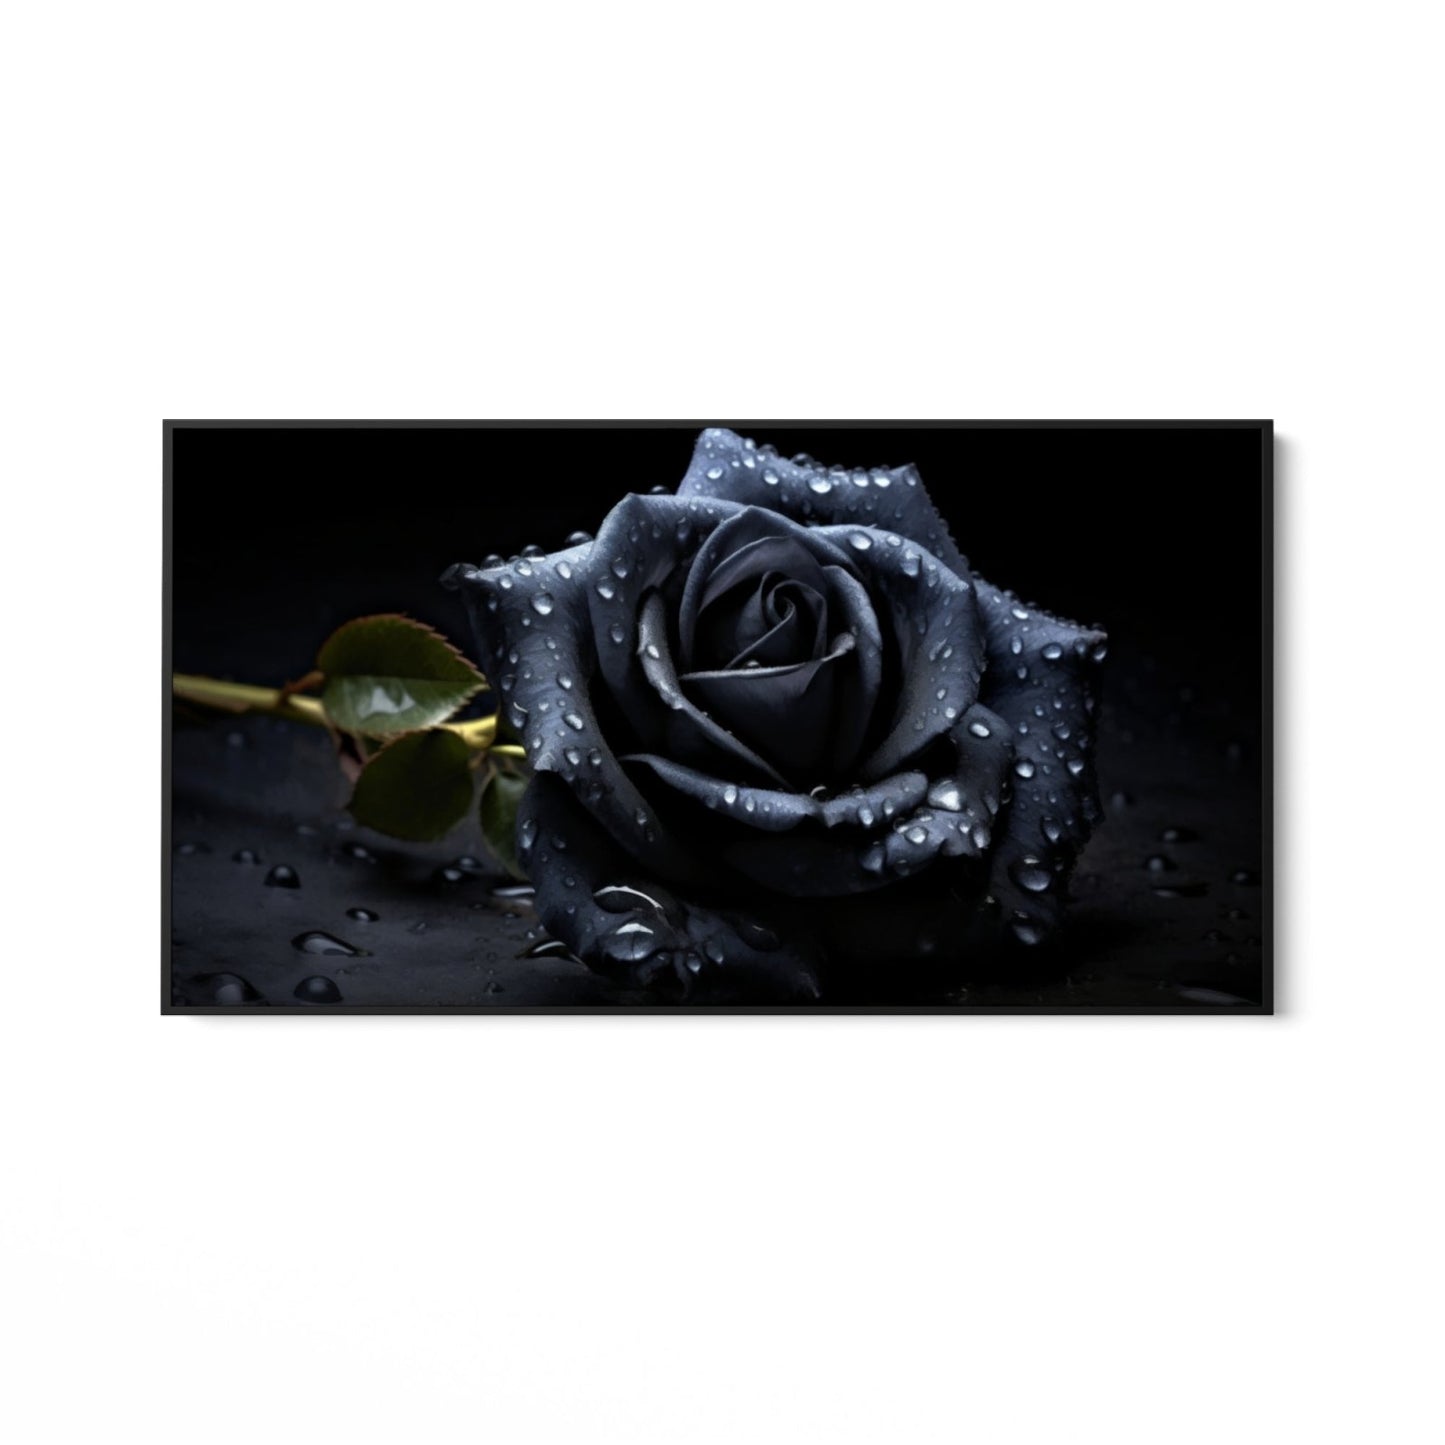 Den sorte rose